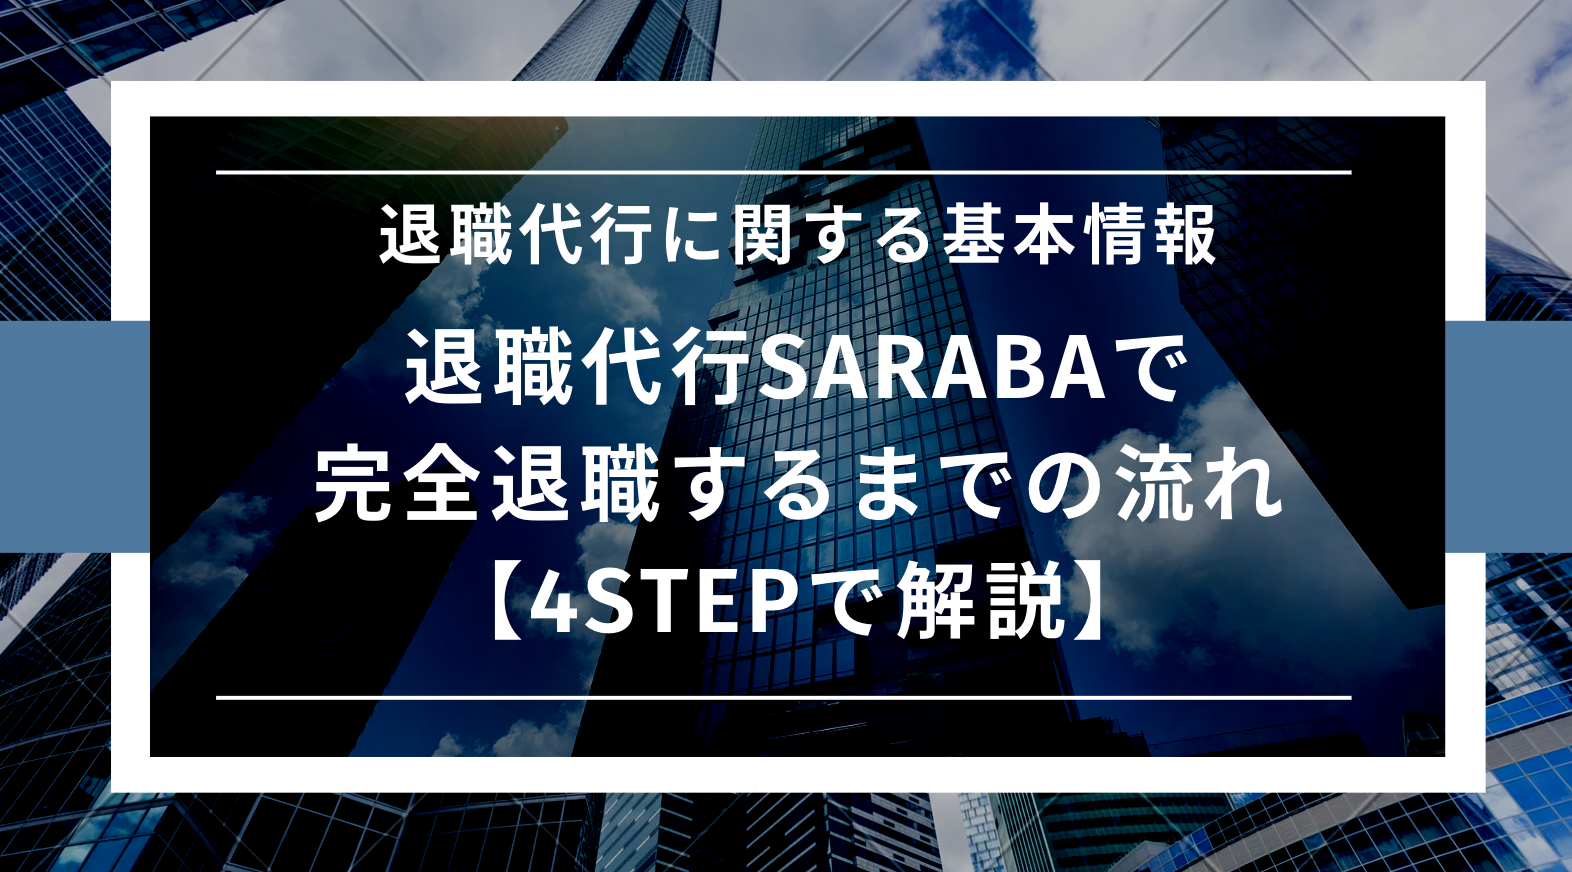 退職代行SARABAで完全退職するまでの流れ【4STEPで解説】